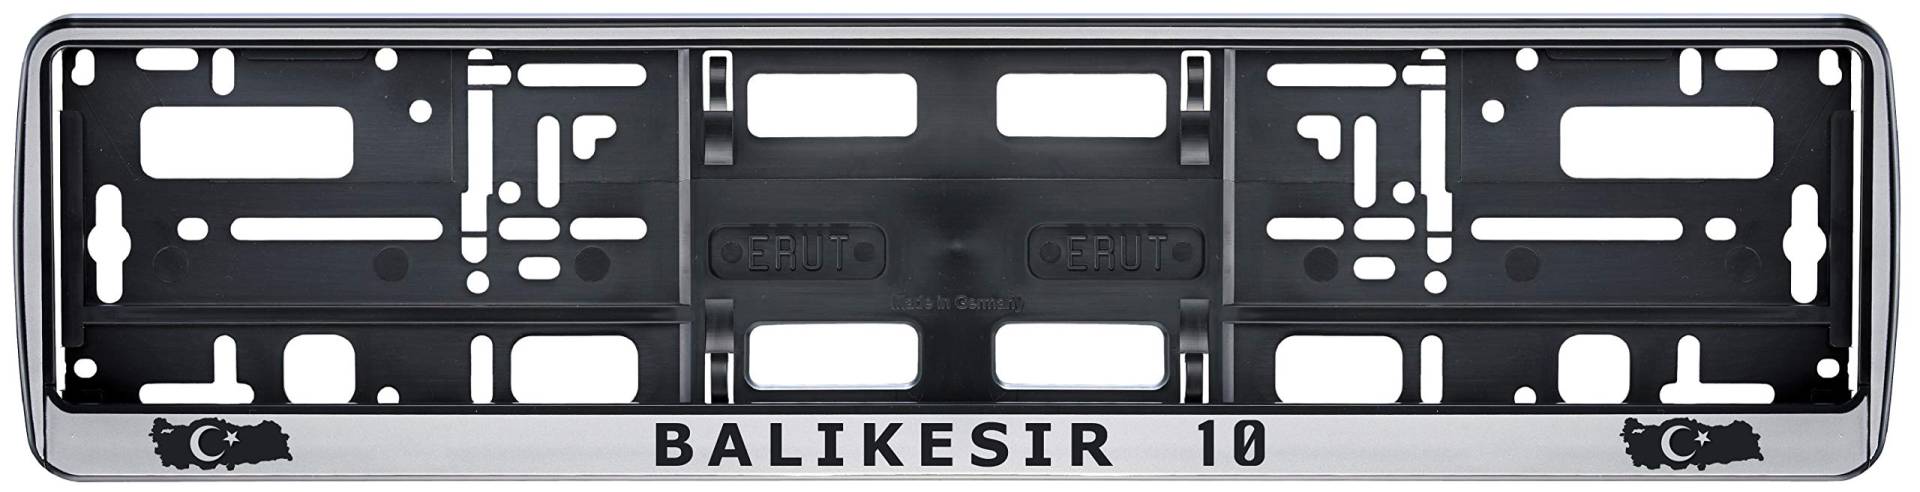 Auto Kennzeichenhalter in der Farbe Silber/Schwarz Nummernschildhalterung Auto, Nummernschildhalter Türkei Flagge 10 Balikesir 2 Stück von aina